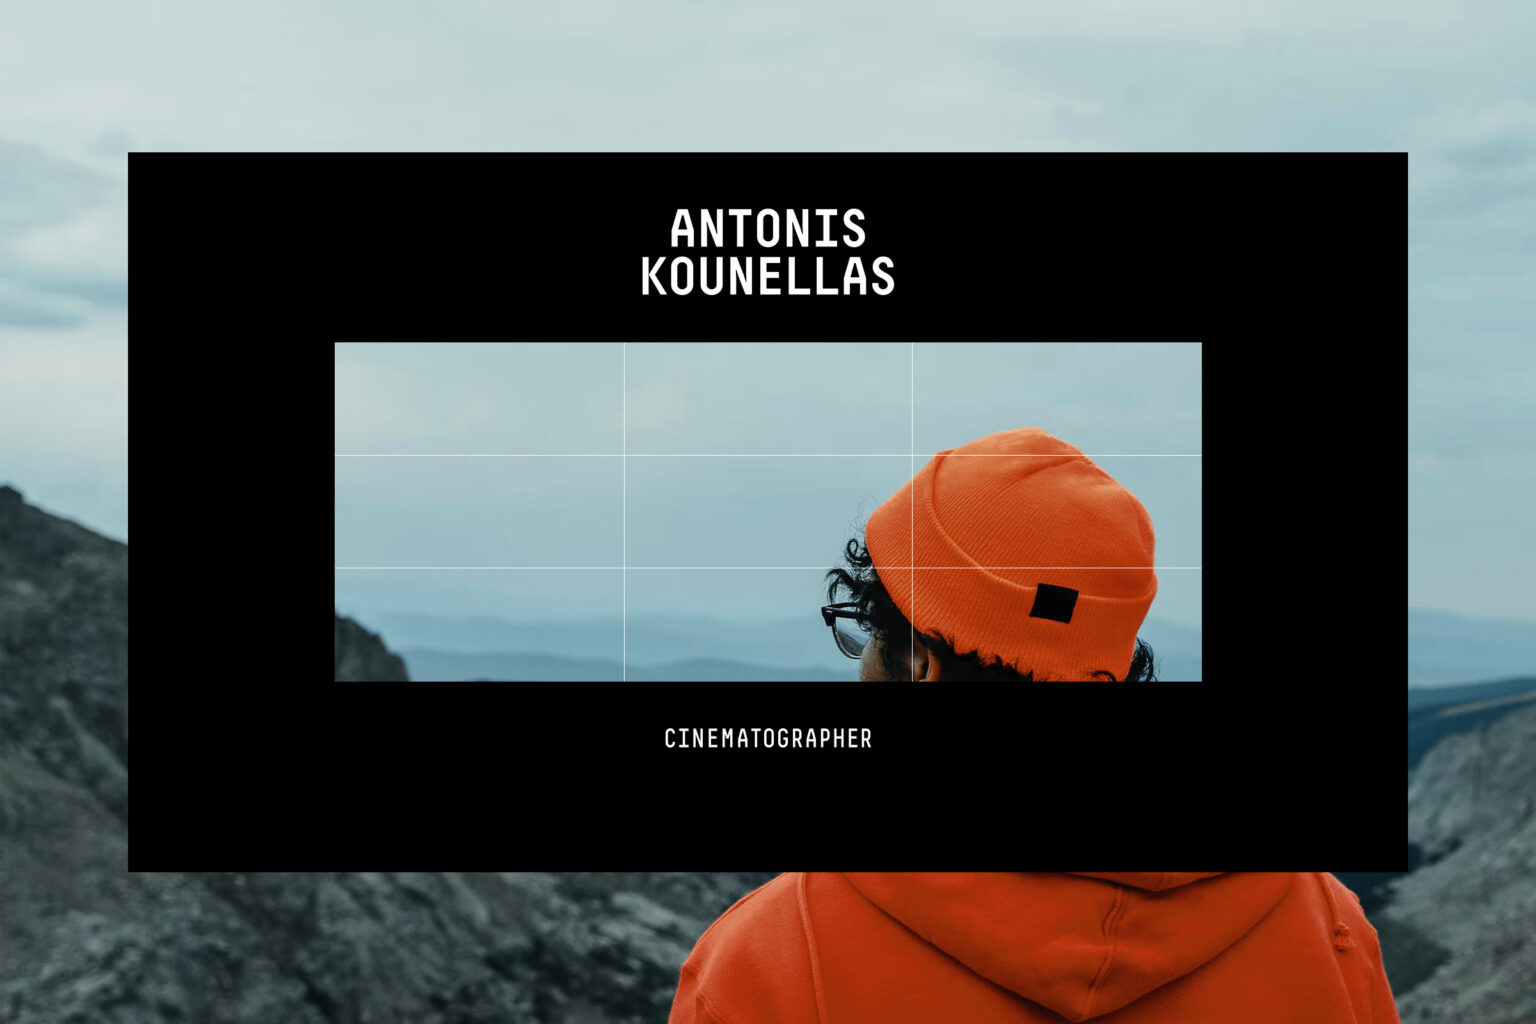 antonis kounellas website design thumbs kommigraphics